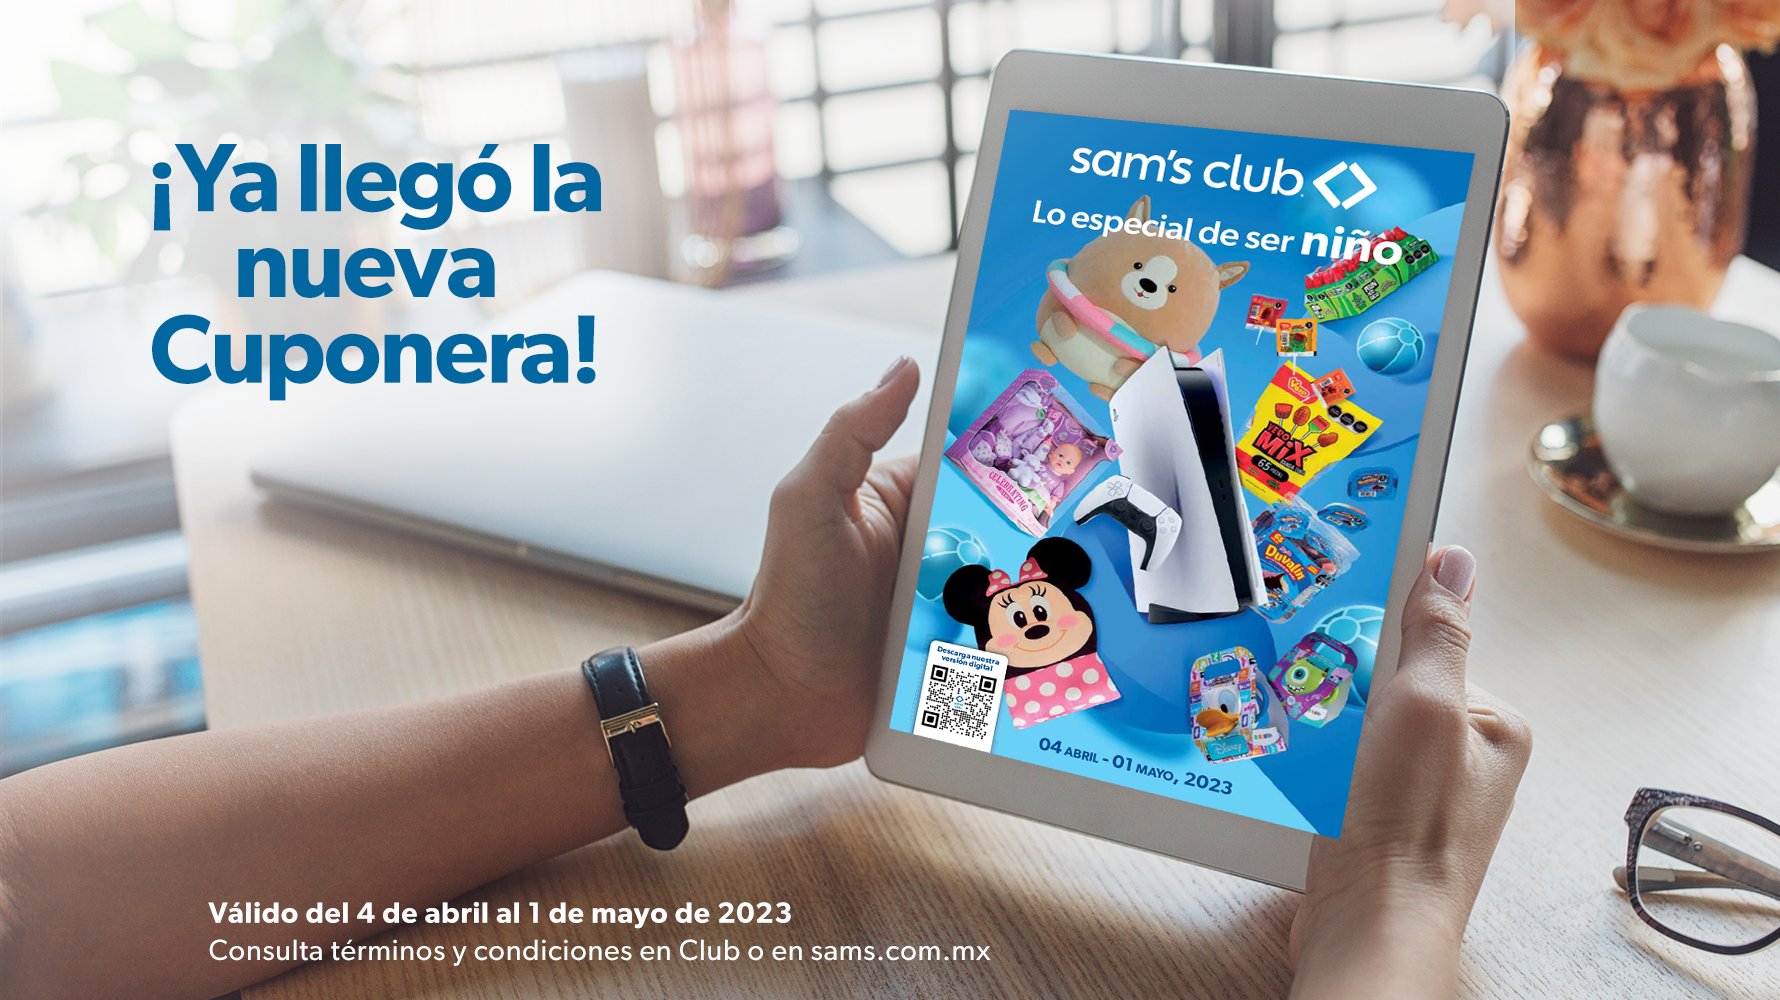 Sam's Club México (@SamsClubMexico) / Twitter